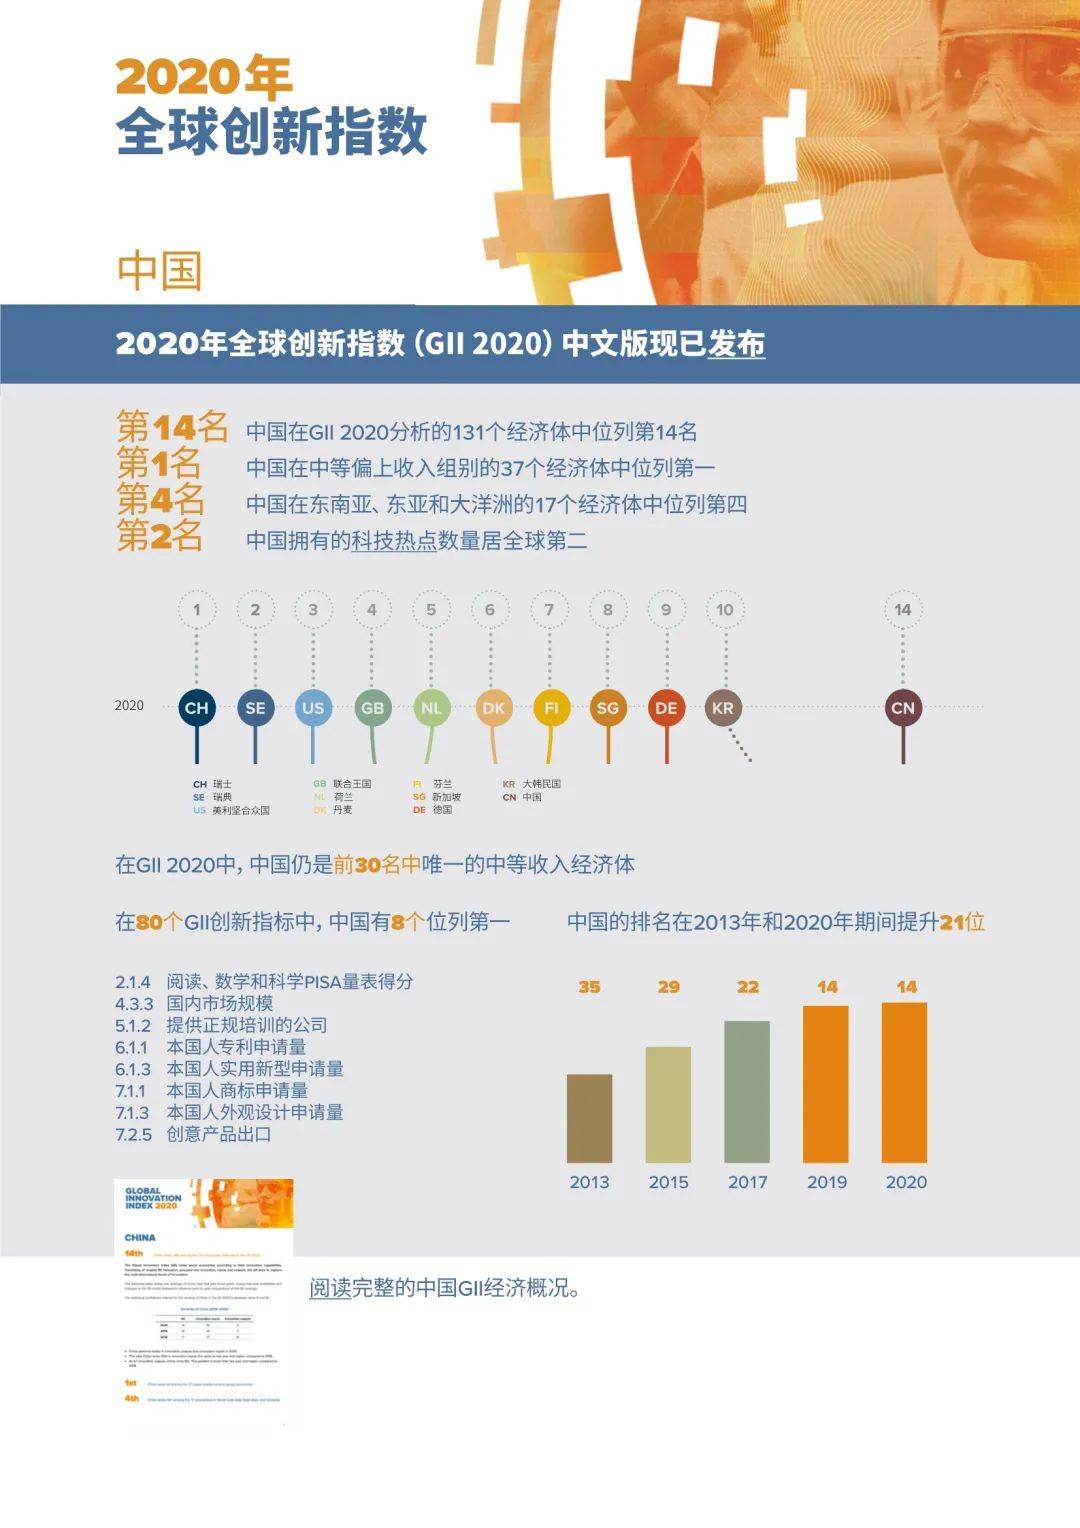 中国人工智能创新指数综合得分排名升至第2，仅次于美国。 - 吉美智慧[安防视频监控平台开发商]